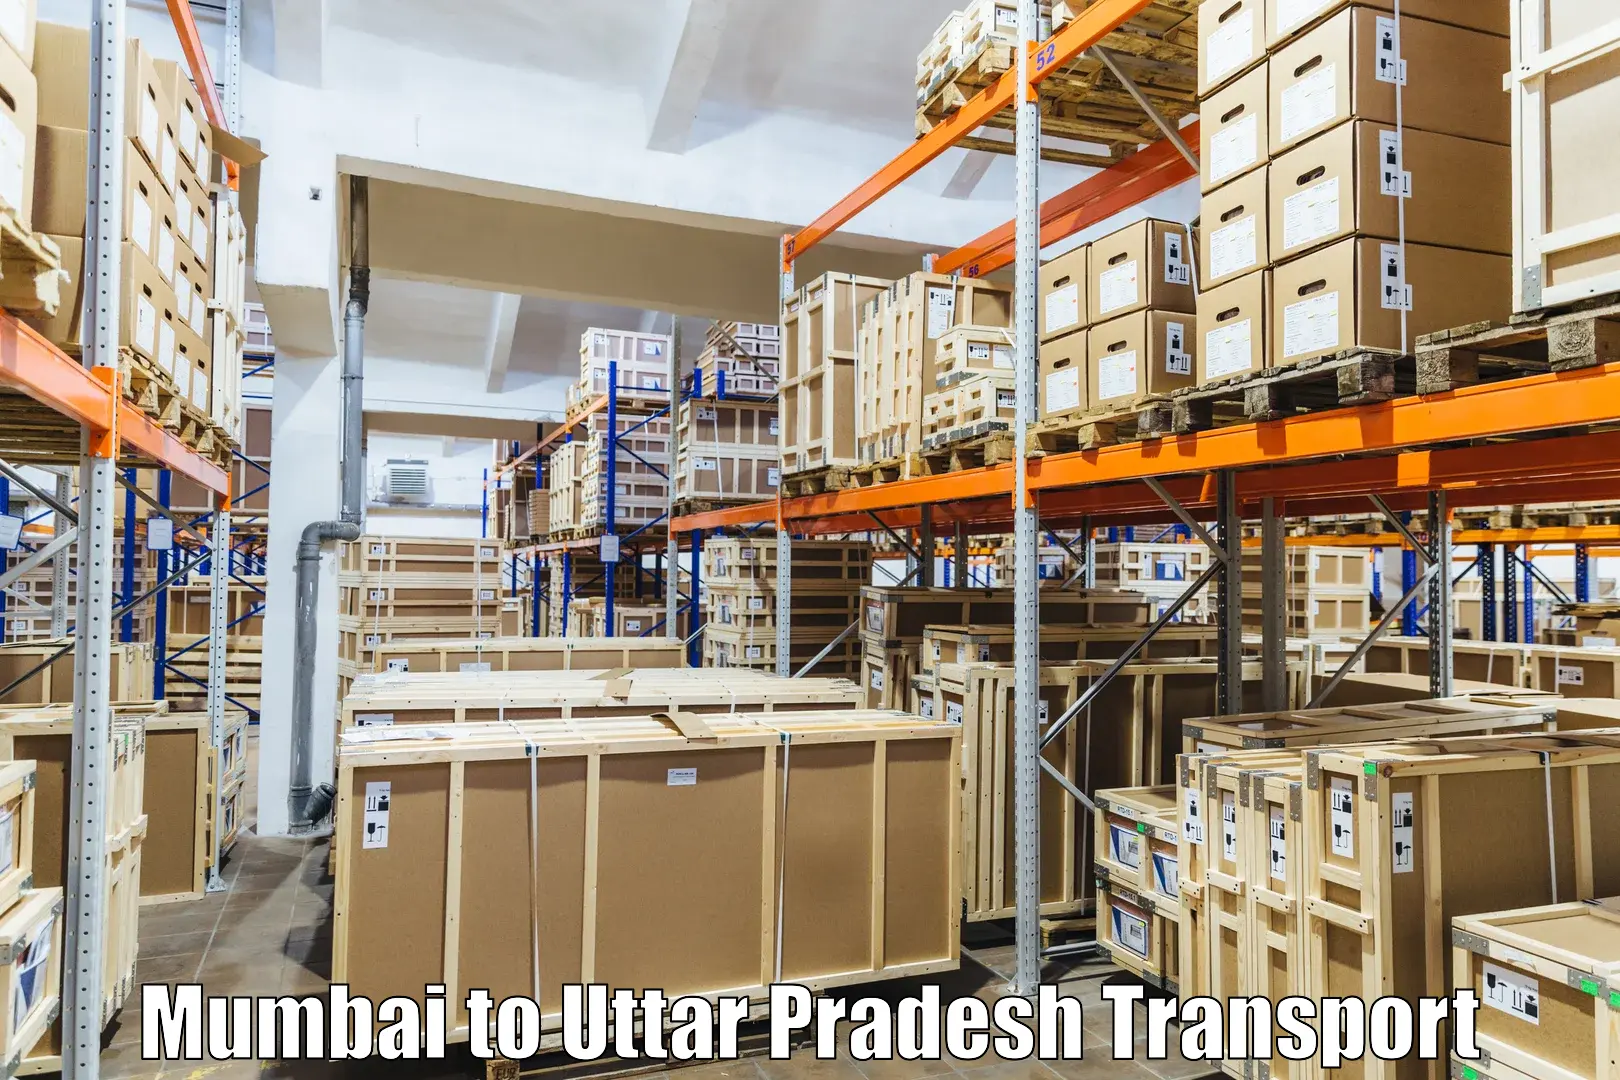 Daily parcel service transport Mumbai to Prayagraj